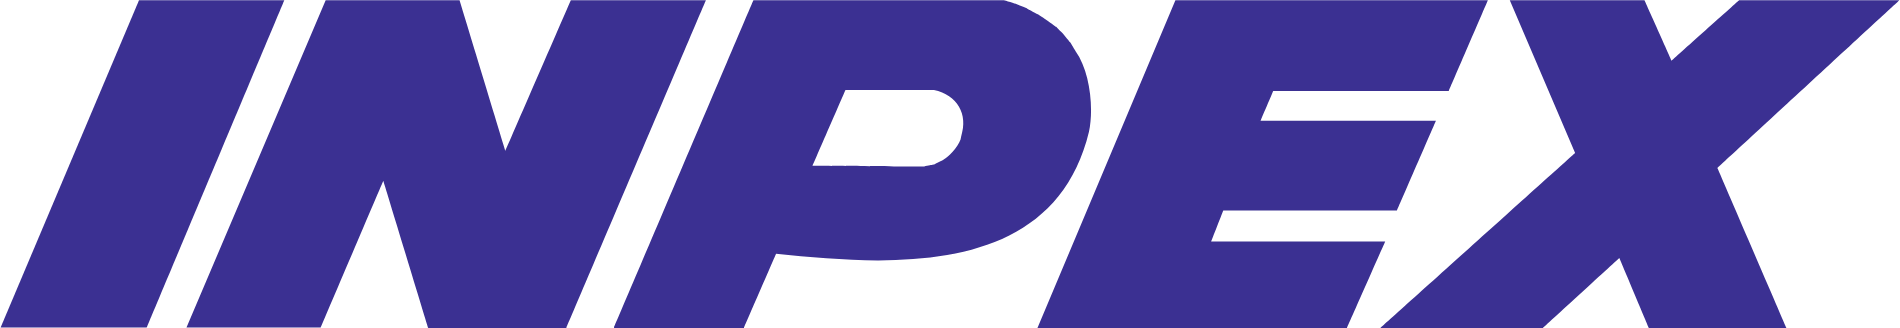 Inpex logo large (transparent PNG)